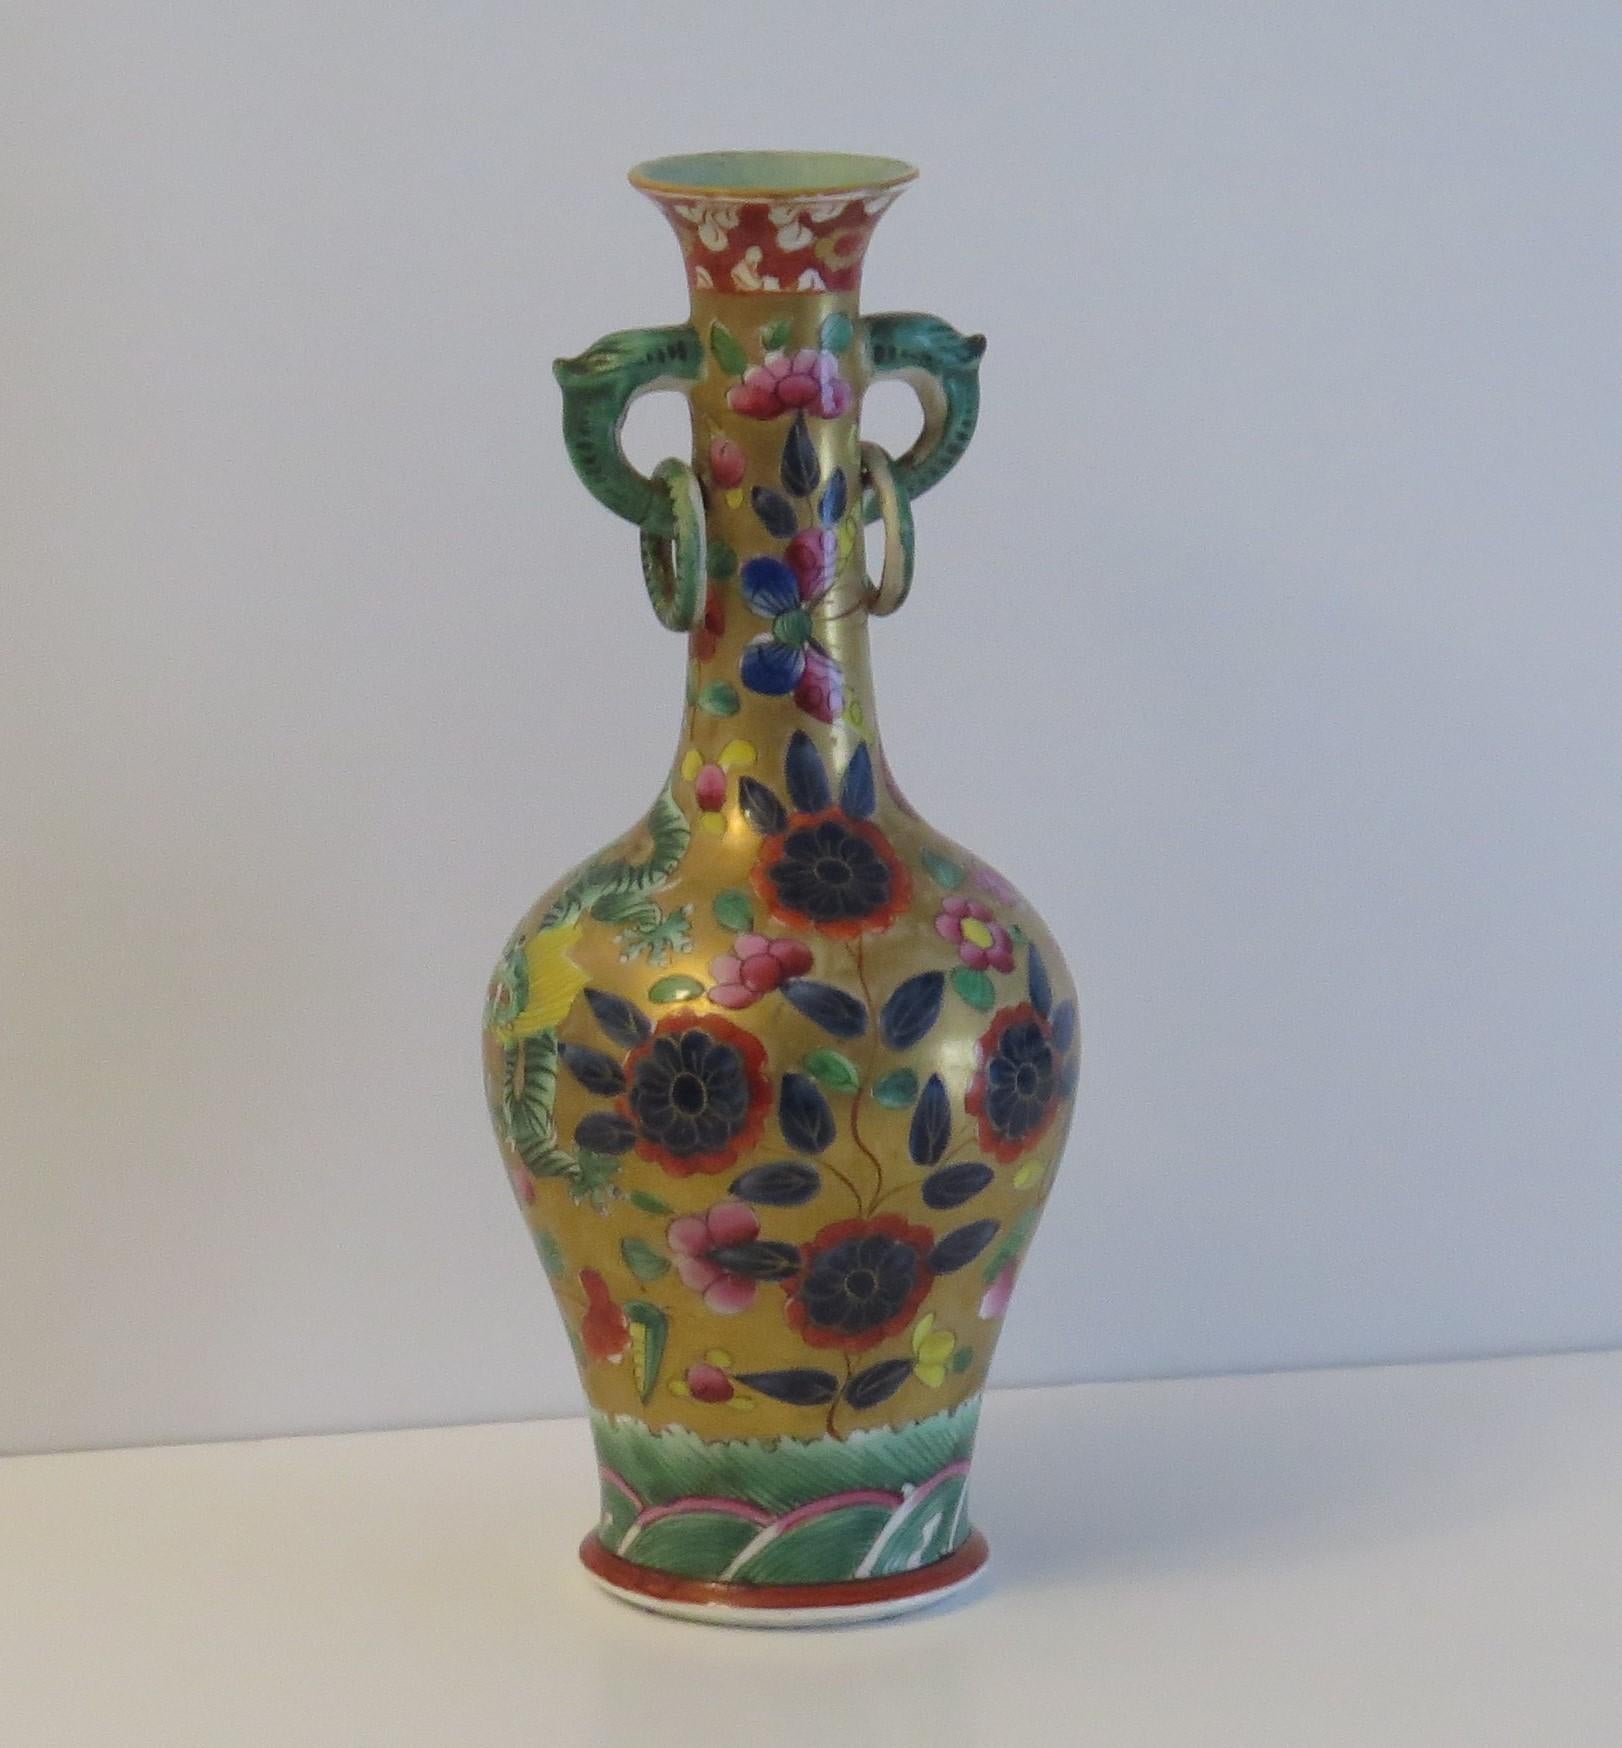 Il s'agit d'un vase en pierre de fer très rare, de style chinois, entièrement peint à la main dans le motif coloré du dragon, fabriqué par l'usine Mason's au début du 19e siècle.

La forme du vase et le motif sont tous deux très rares.

Le vase a